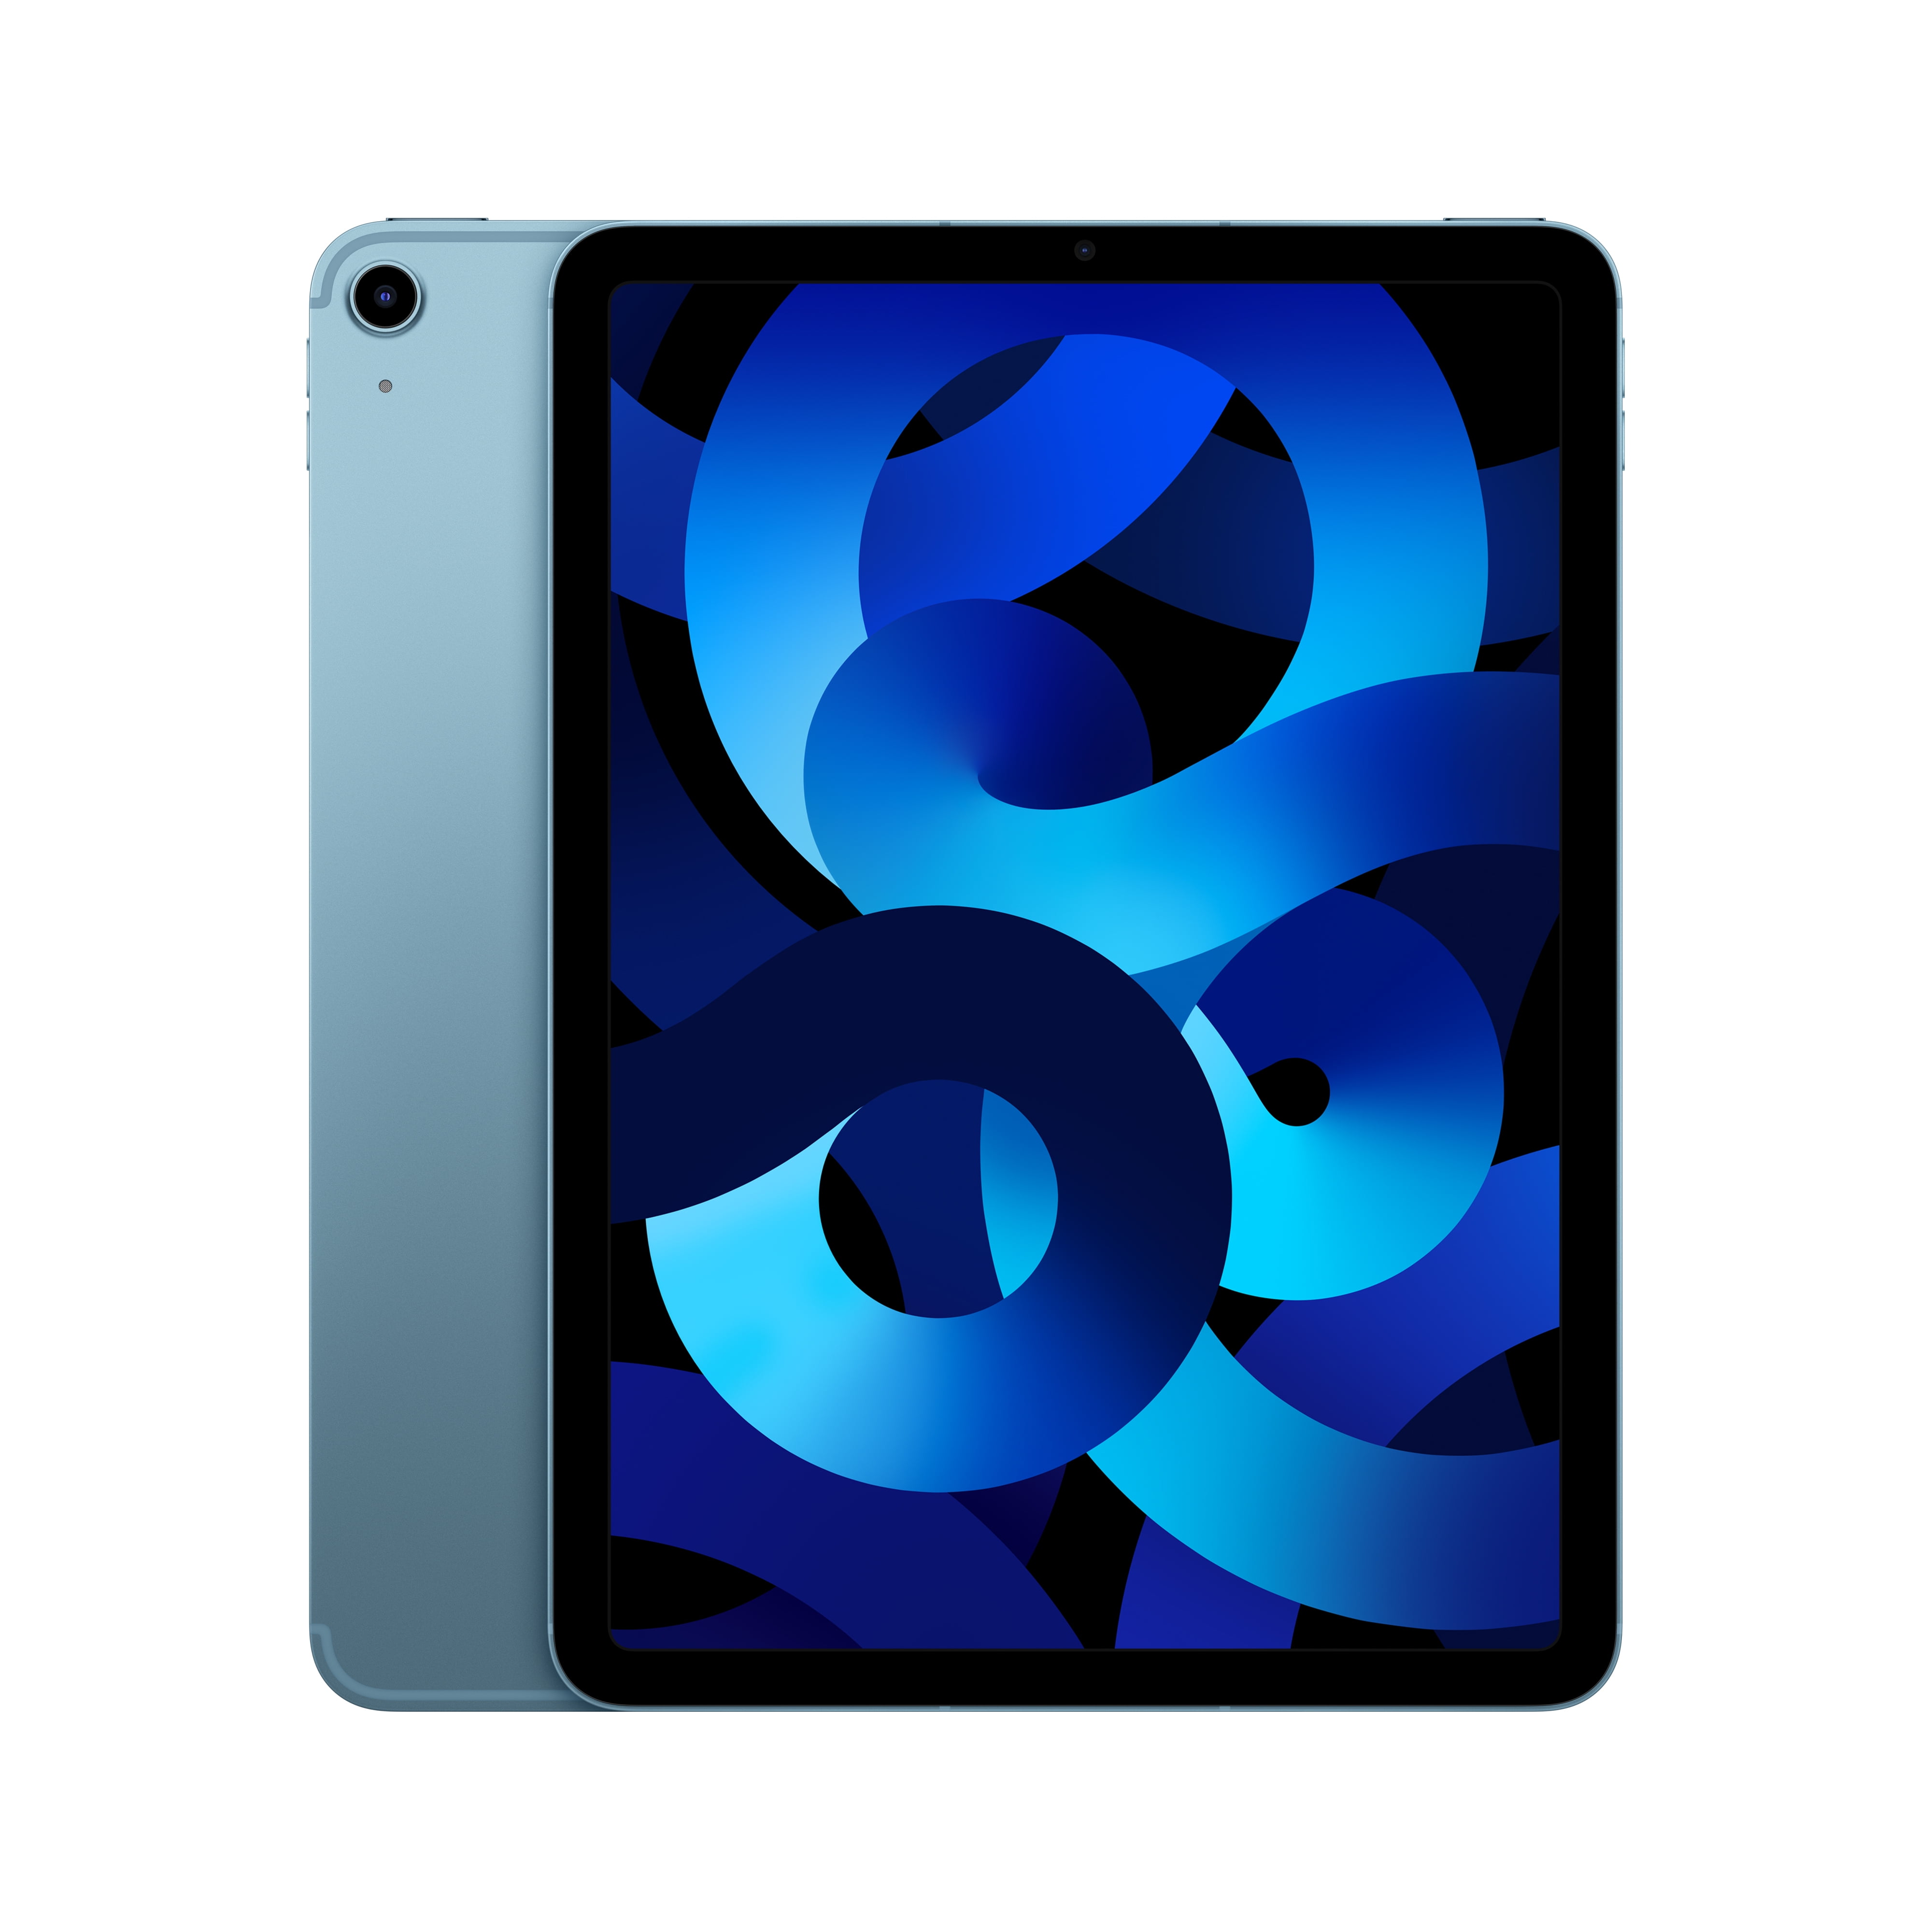 Apple iPad Air 10.9 5th Generation 256GB WiFi Cellular Mm733ll/a - Blue